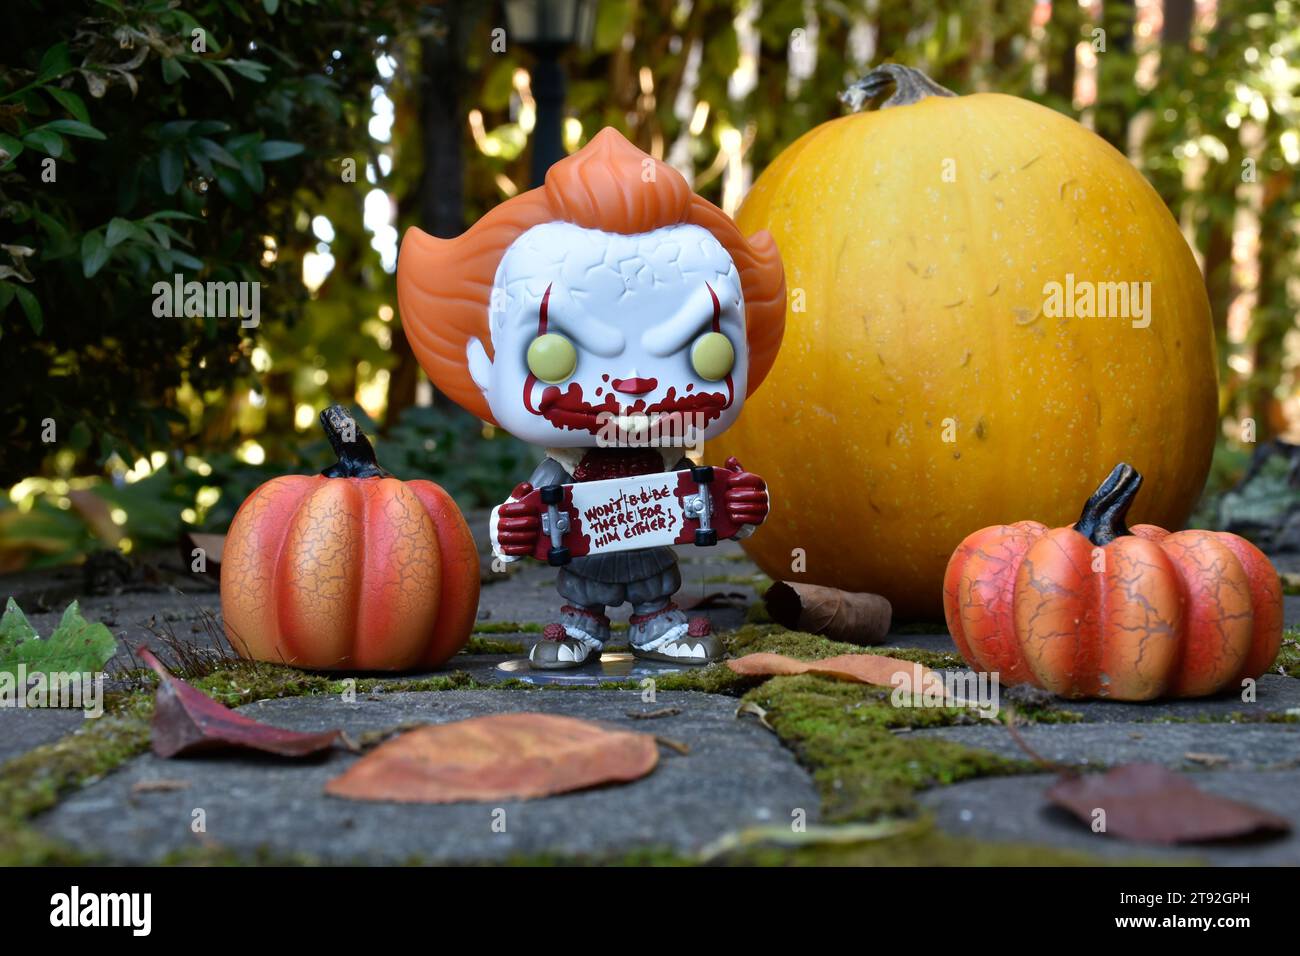 Funko Pop figurine d'action de Pennywise mal clown avec planche à roulettes sanglante du film d'horreur IT. Halloween, saison effrayante, citrouilles, mousse, feuilles d'automne. Banque D'Images